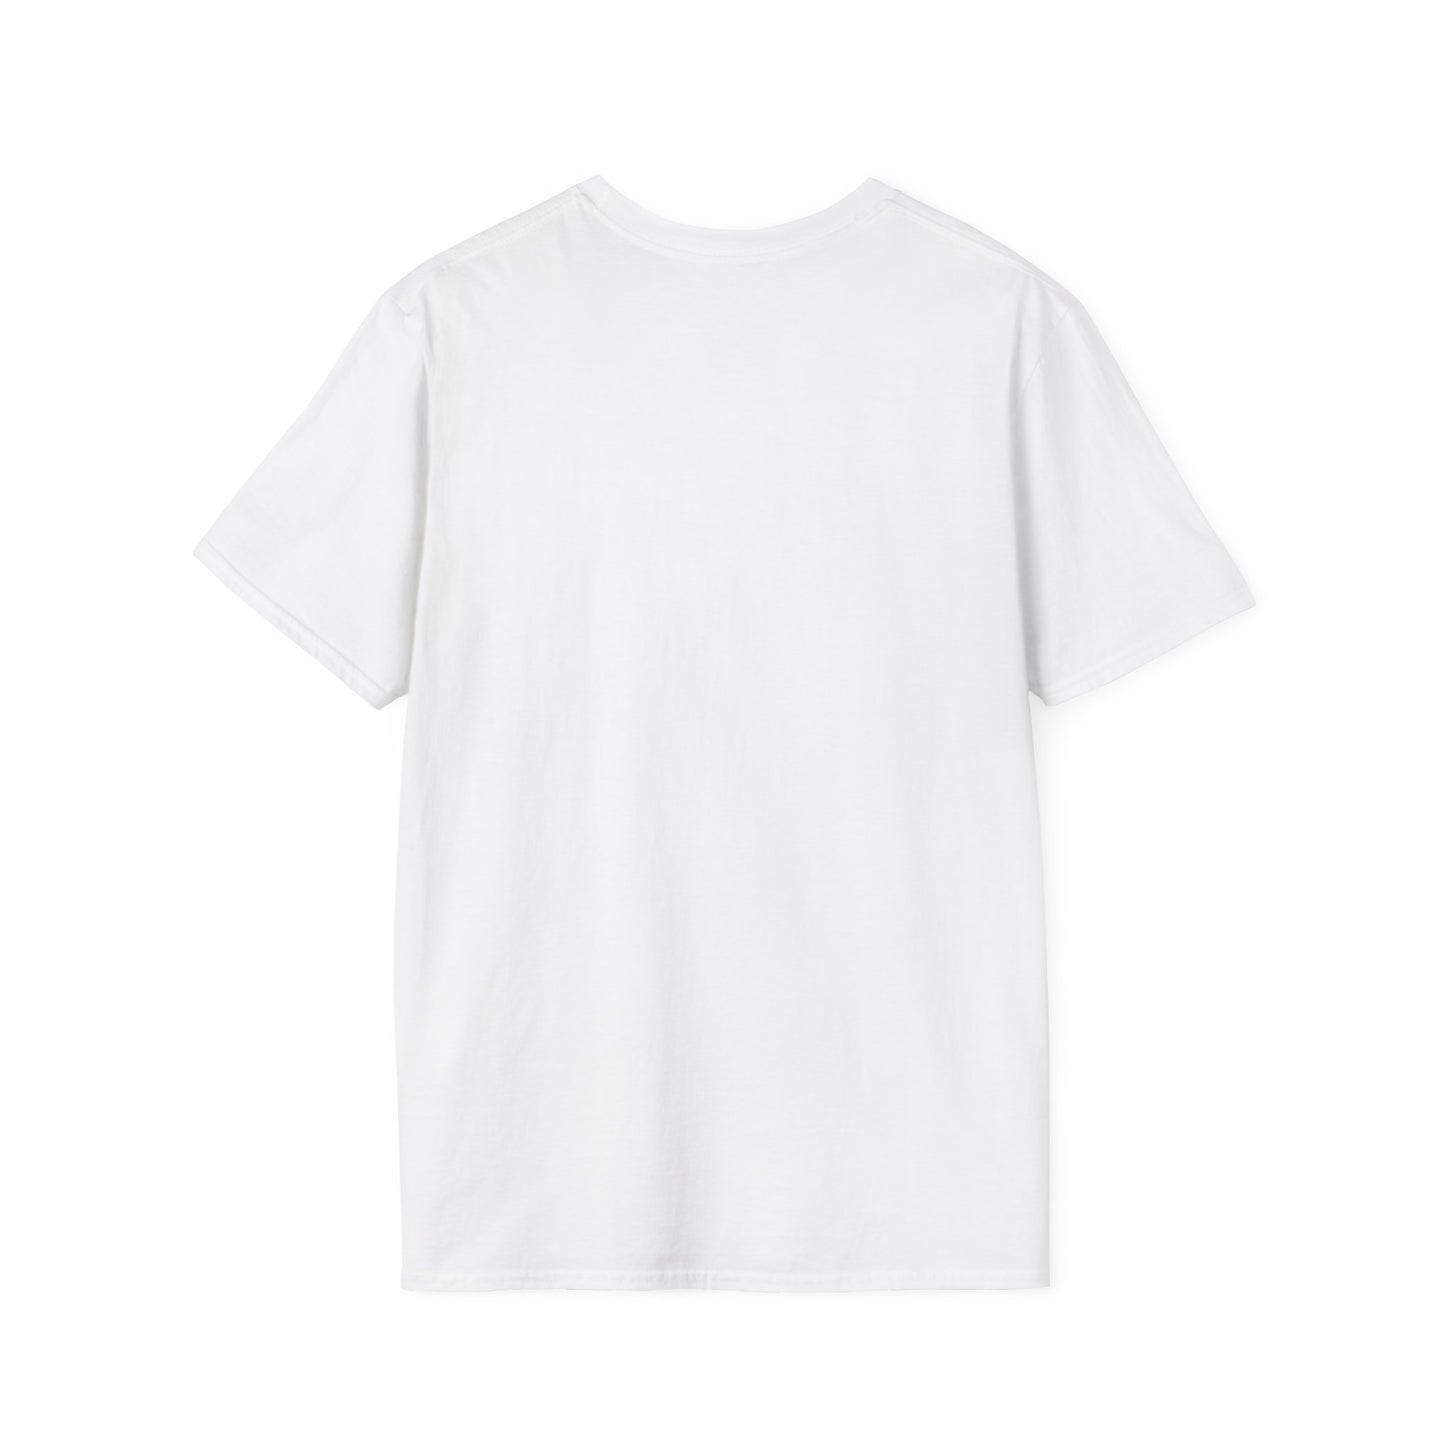 LCAM-21 Unisex Softstyle T-Shirt